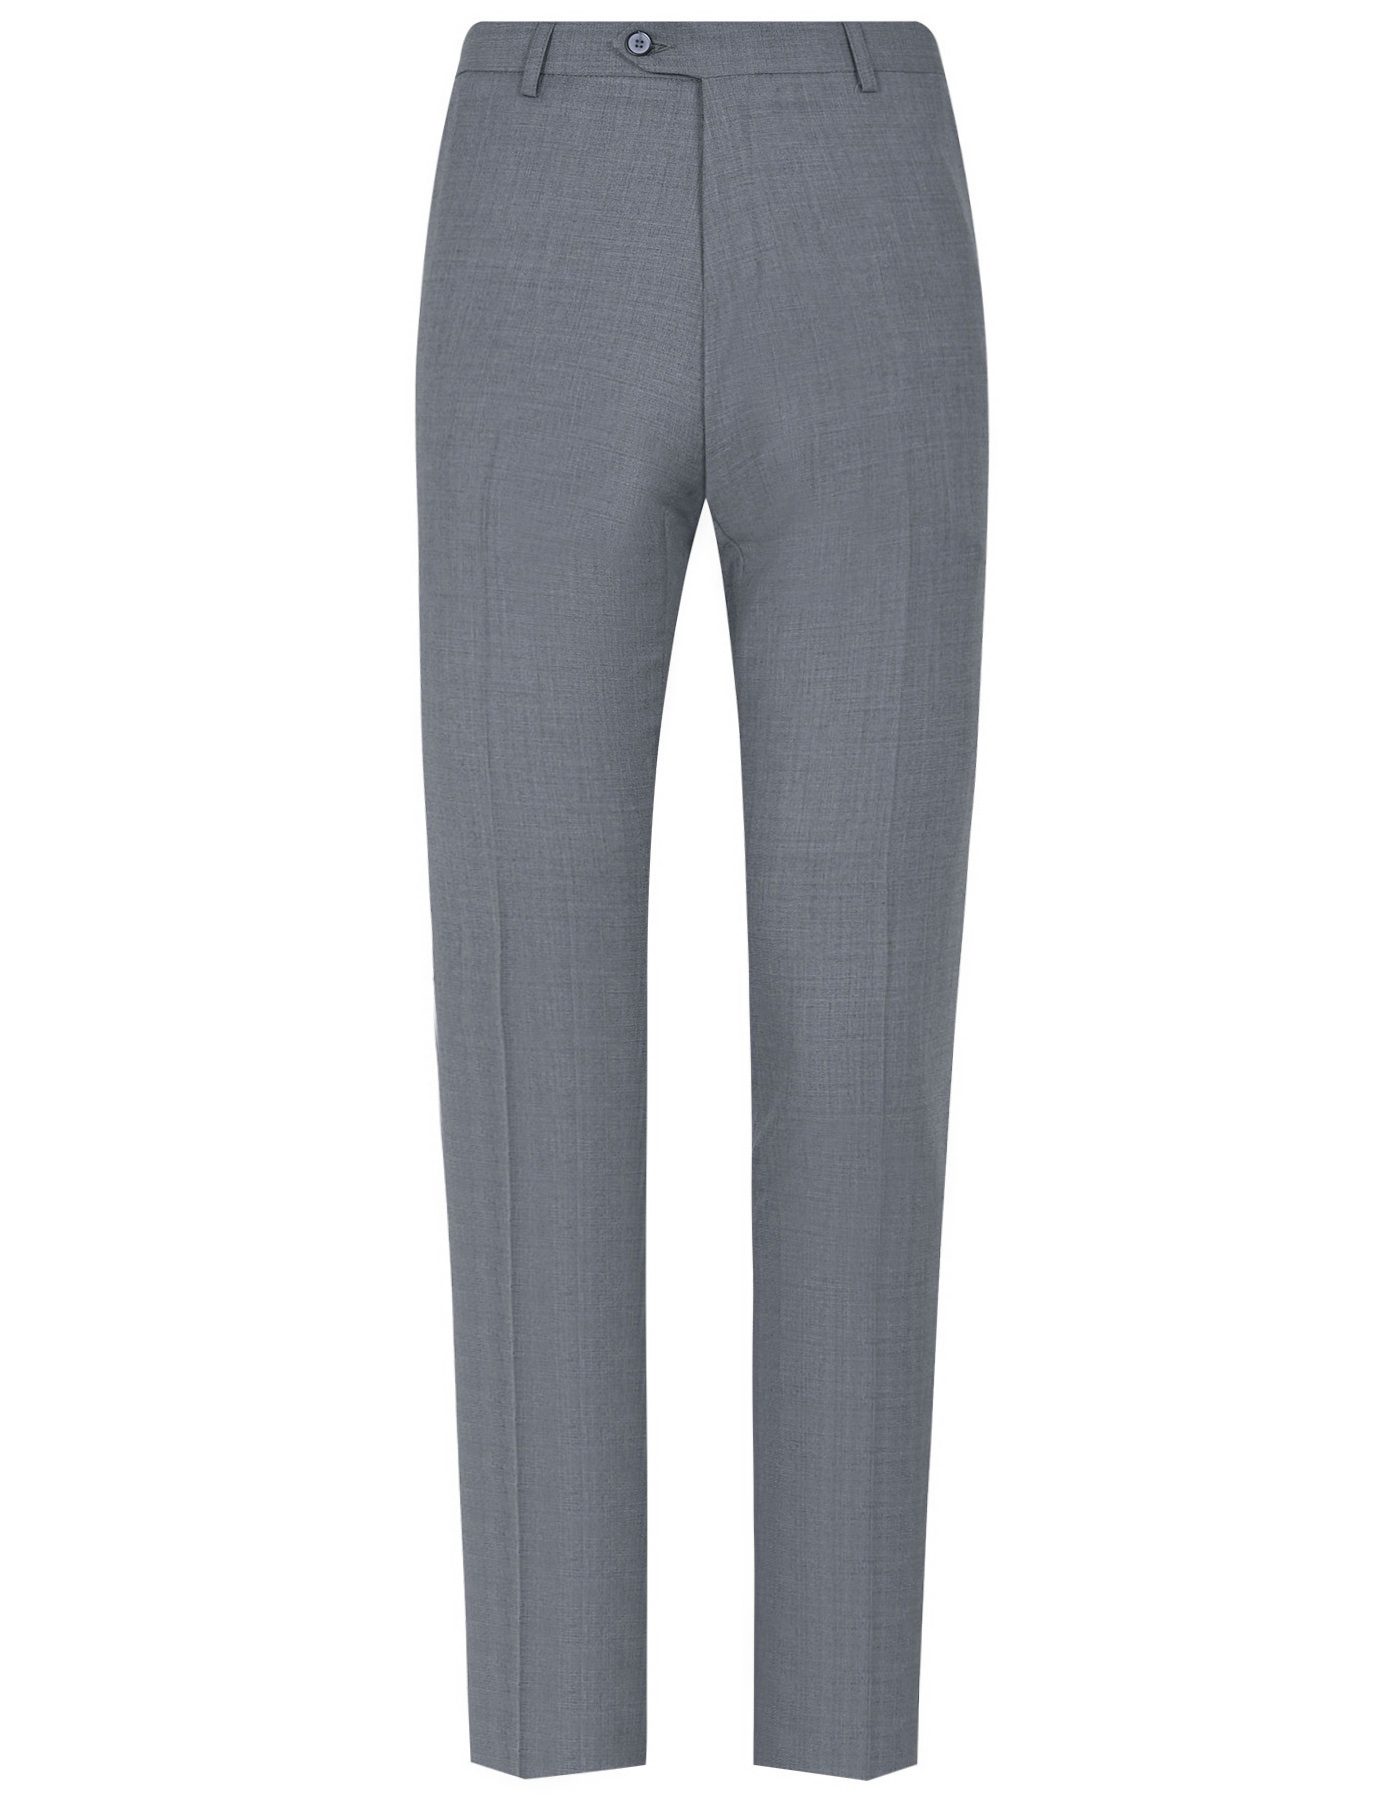 Grey Texture Classic Fit Suit For Men |Uniworth